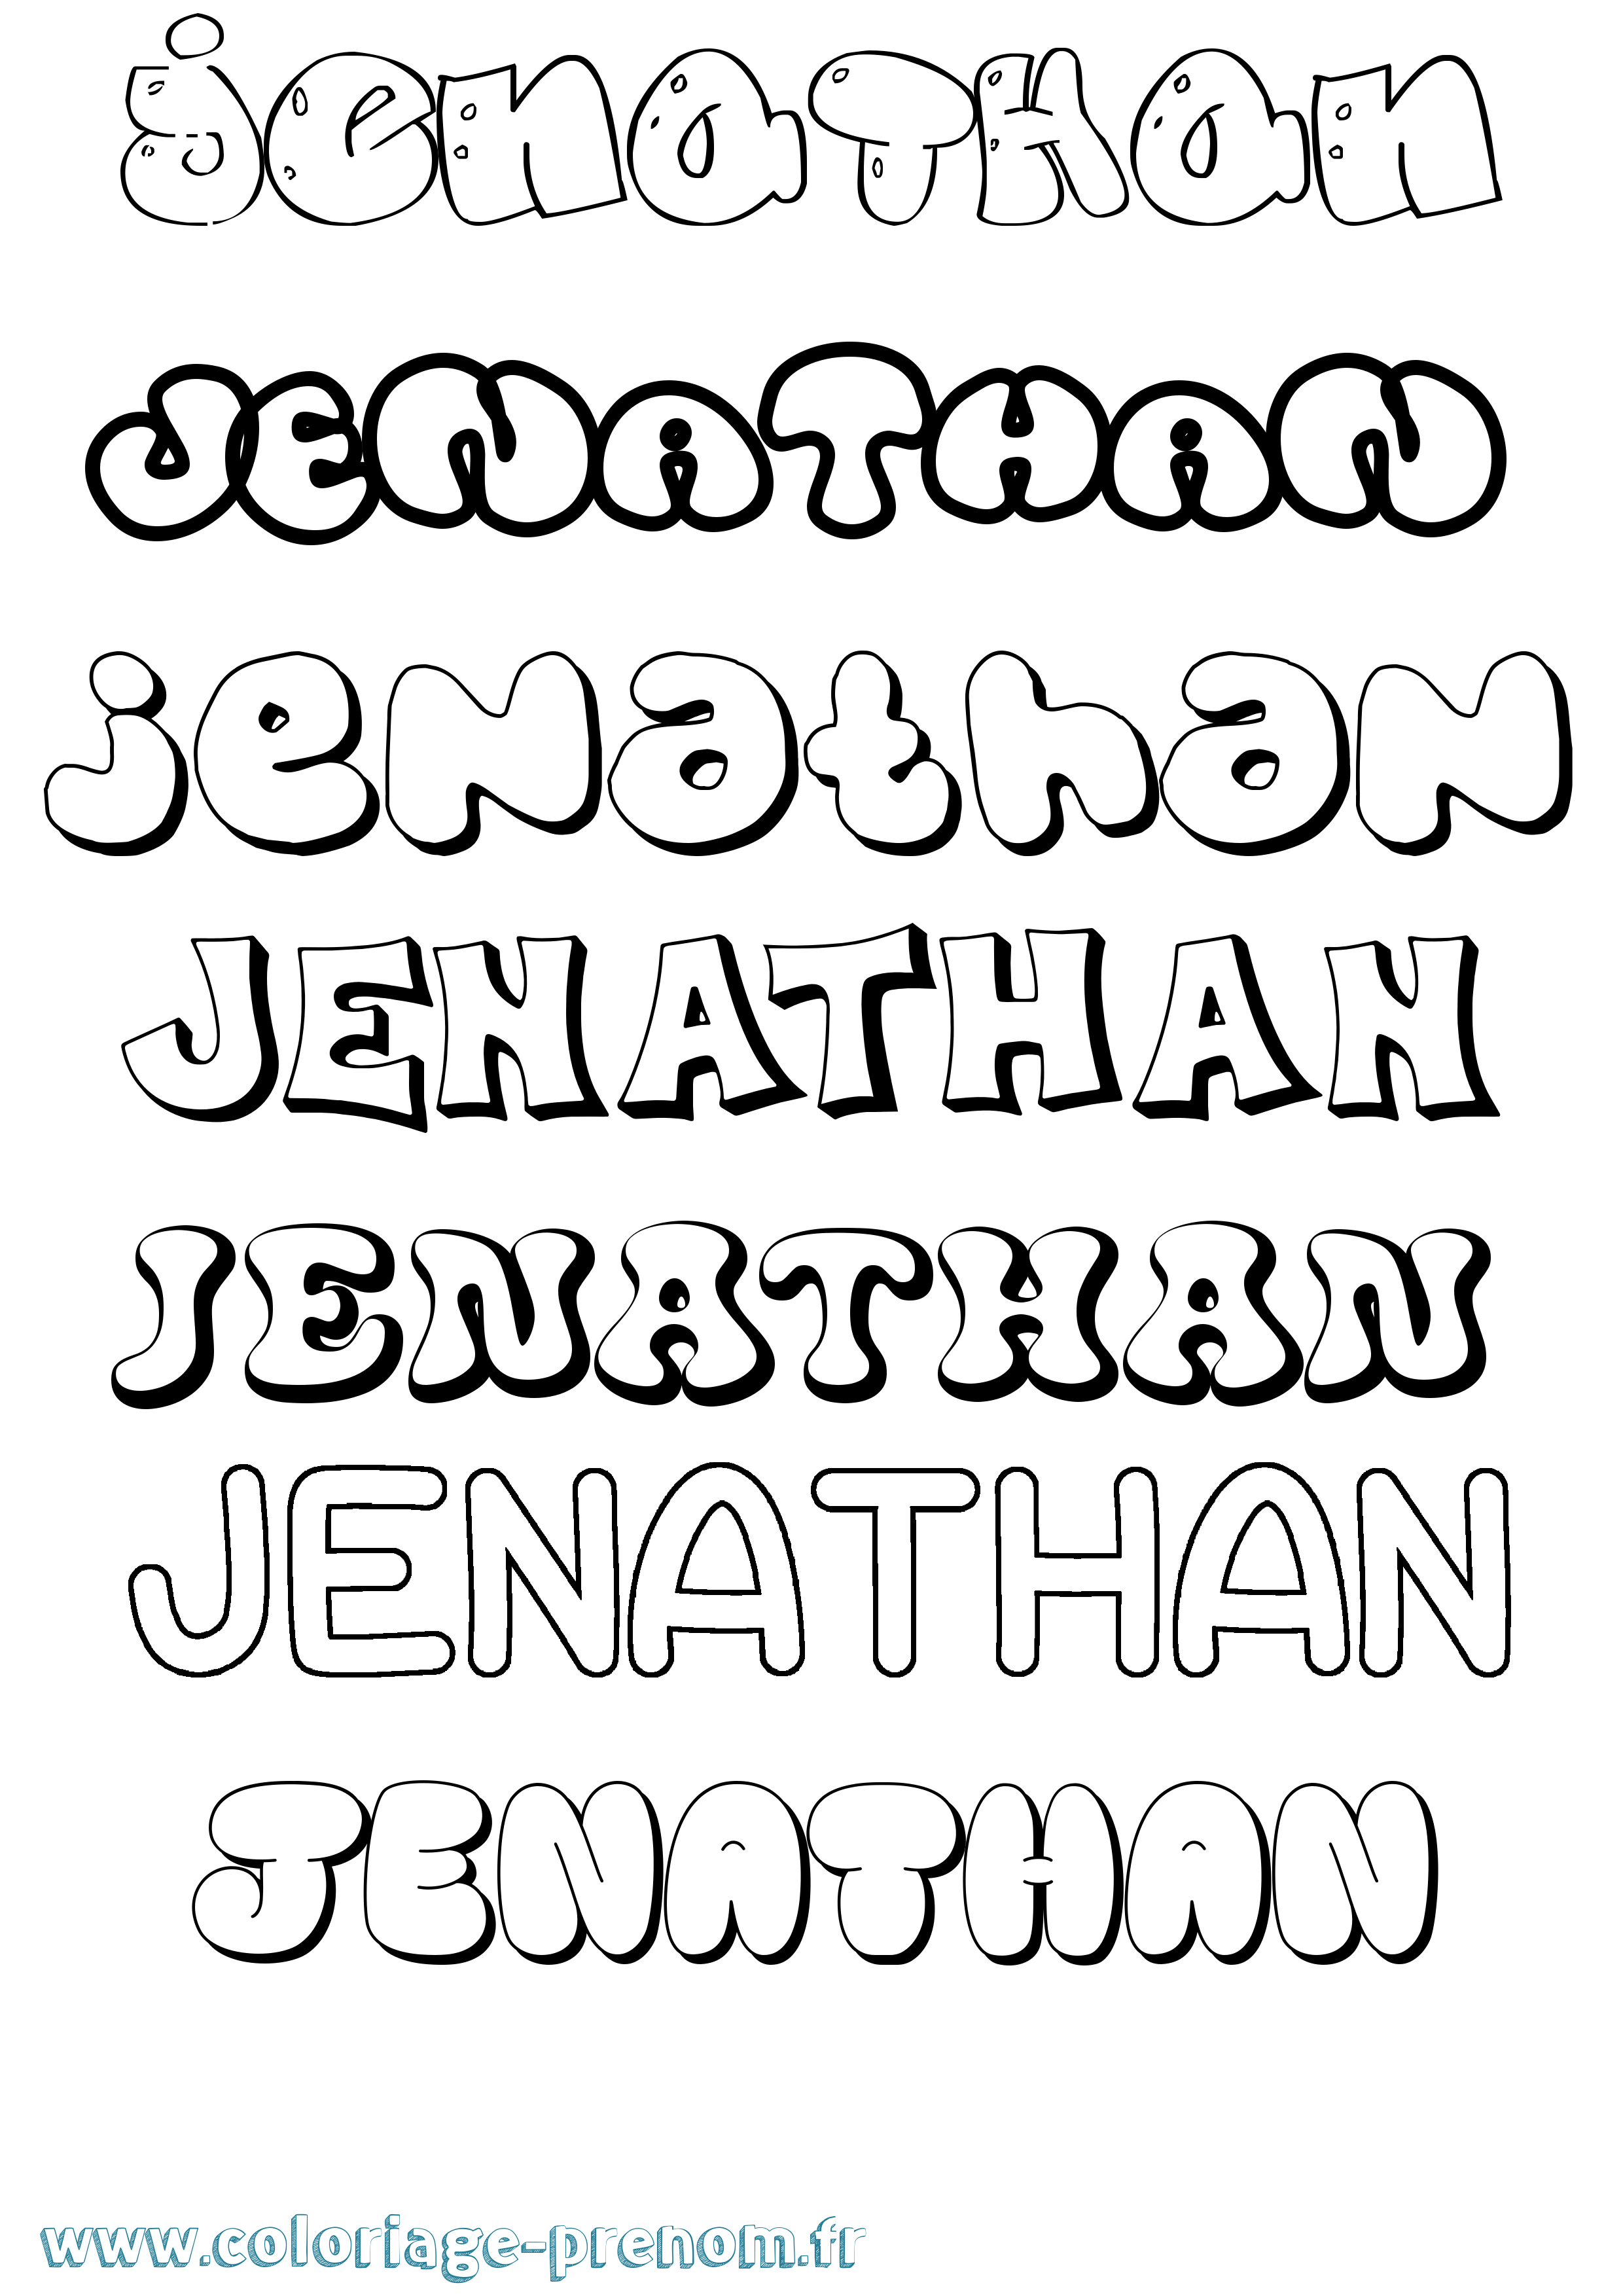 Coloriage prénom Jenathan Bubble